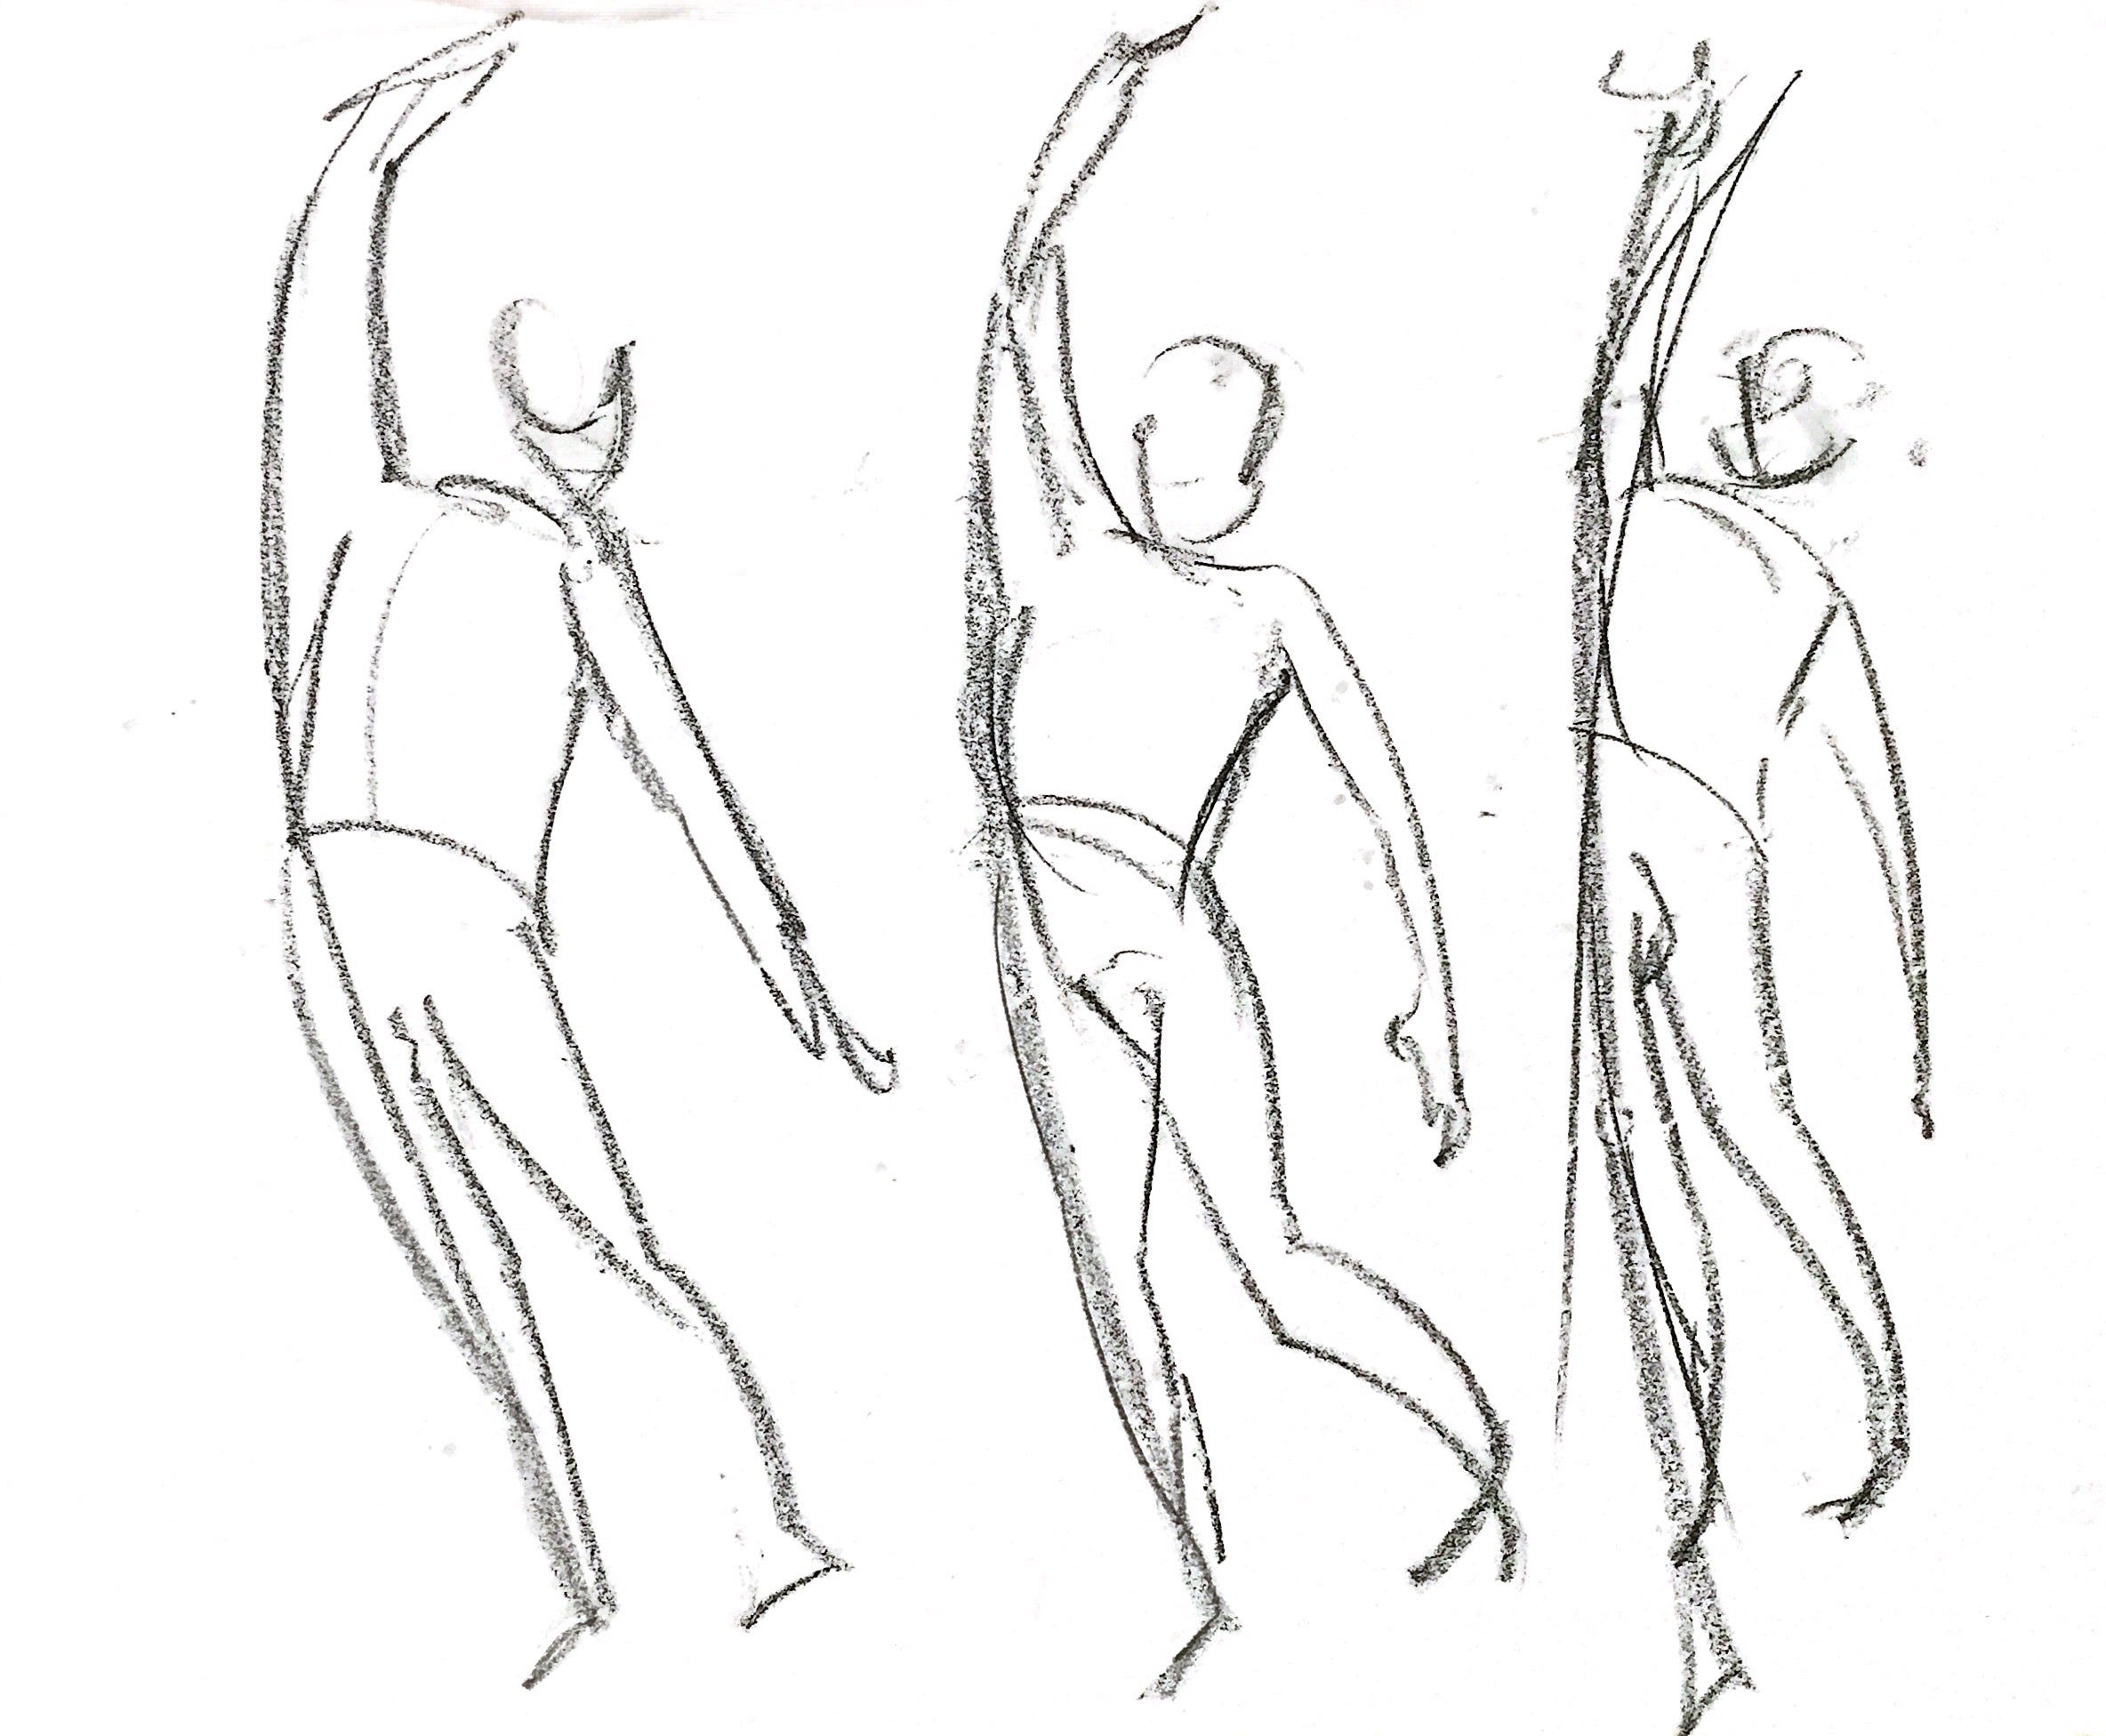 Figure Drawing. 2/20/21: Gesture drawing studies